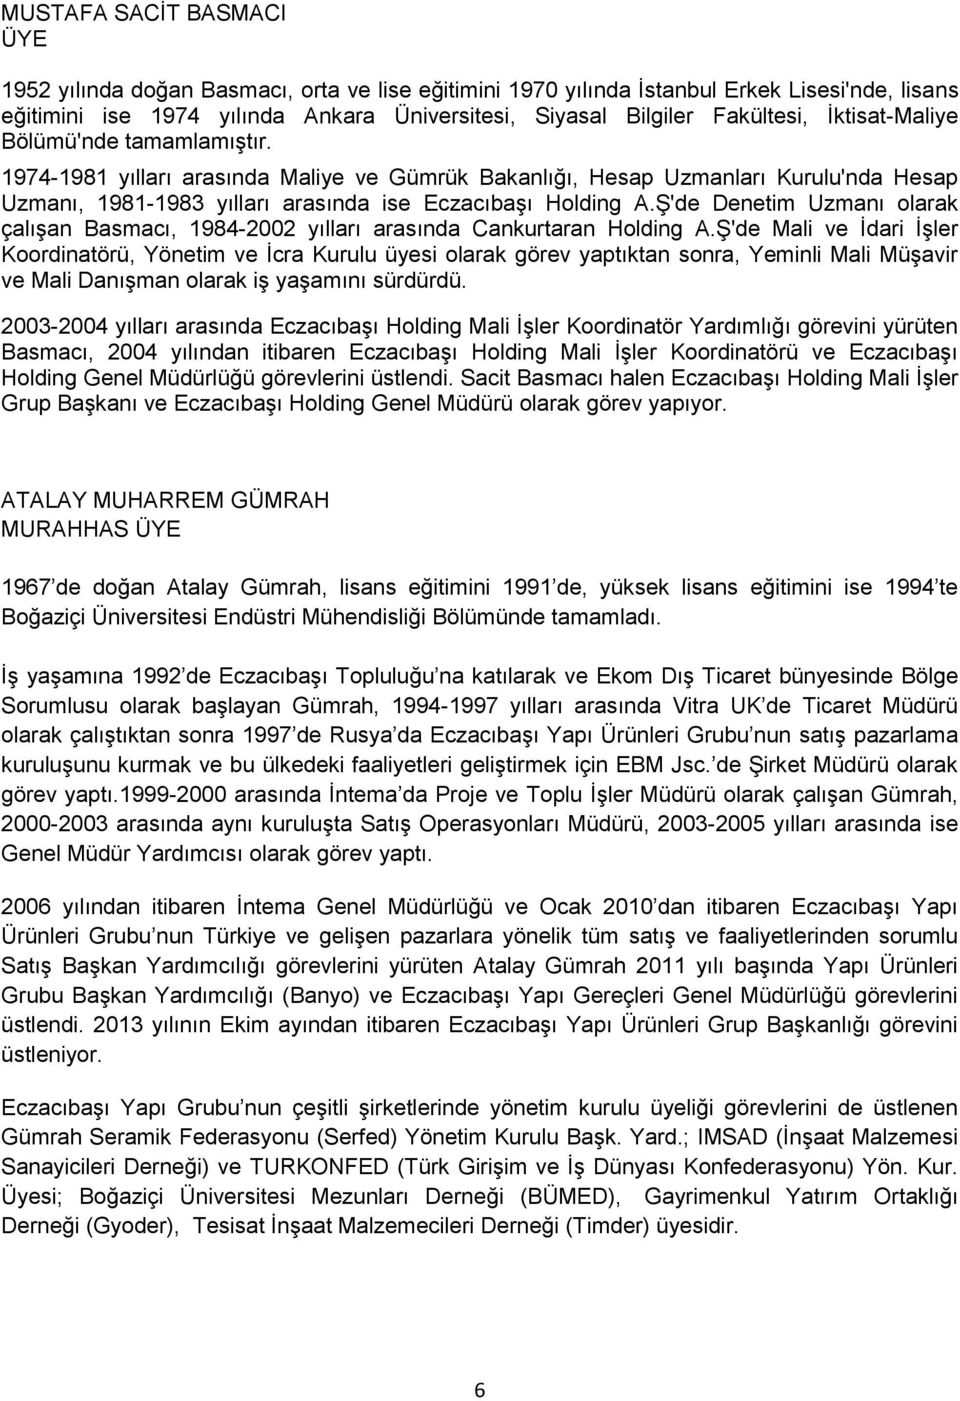 Ş'de Denetim Uzmanı olarak çalışan Basmacı, 1984-2002 yılları arasında Cankurtaran Holding A.